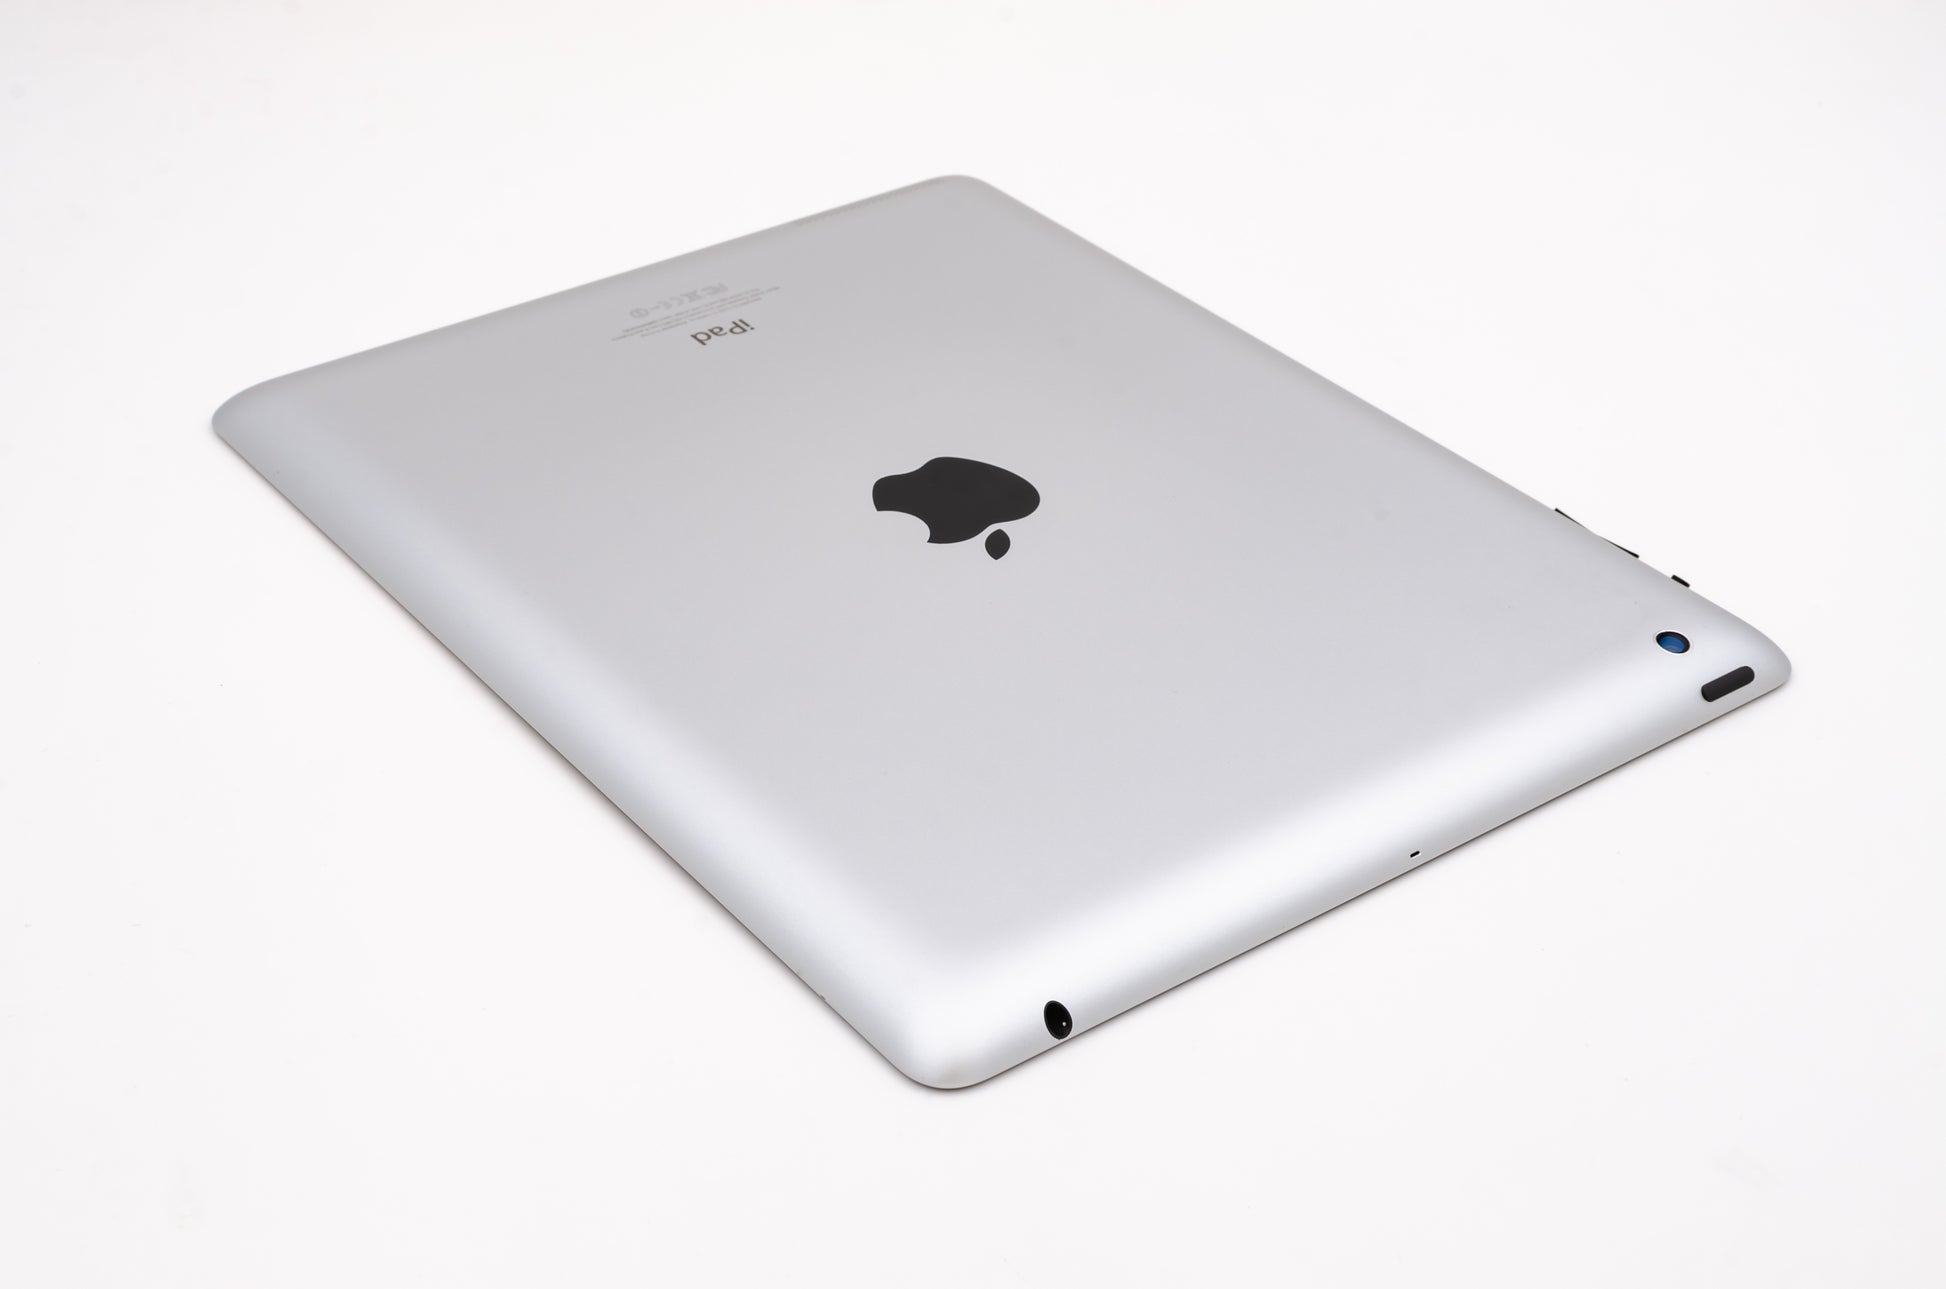 apple-2012-9.7-inch-ipad-4-a1460-silver/black-4